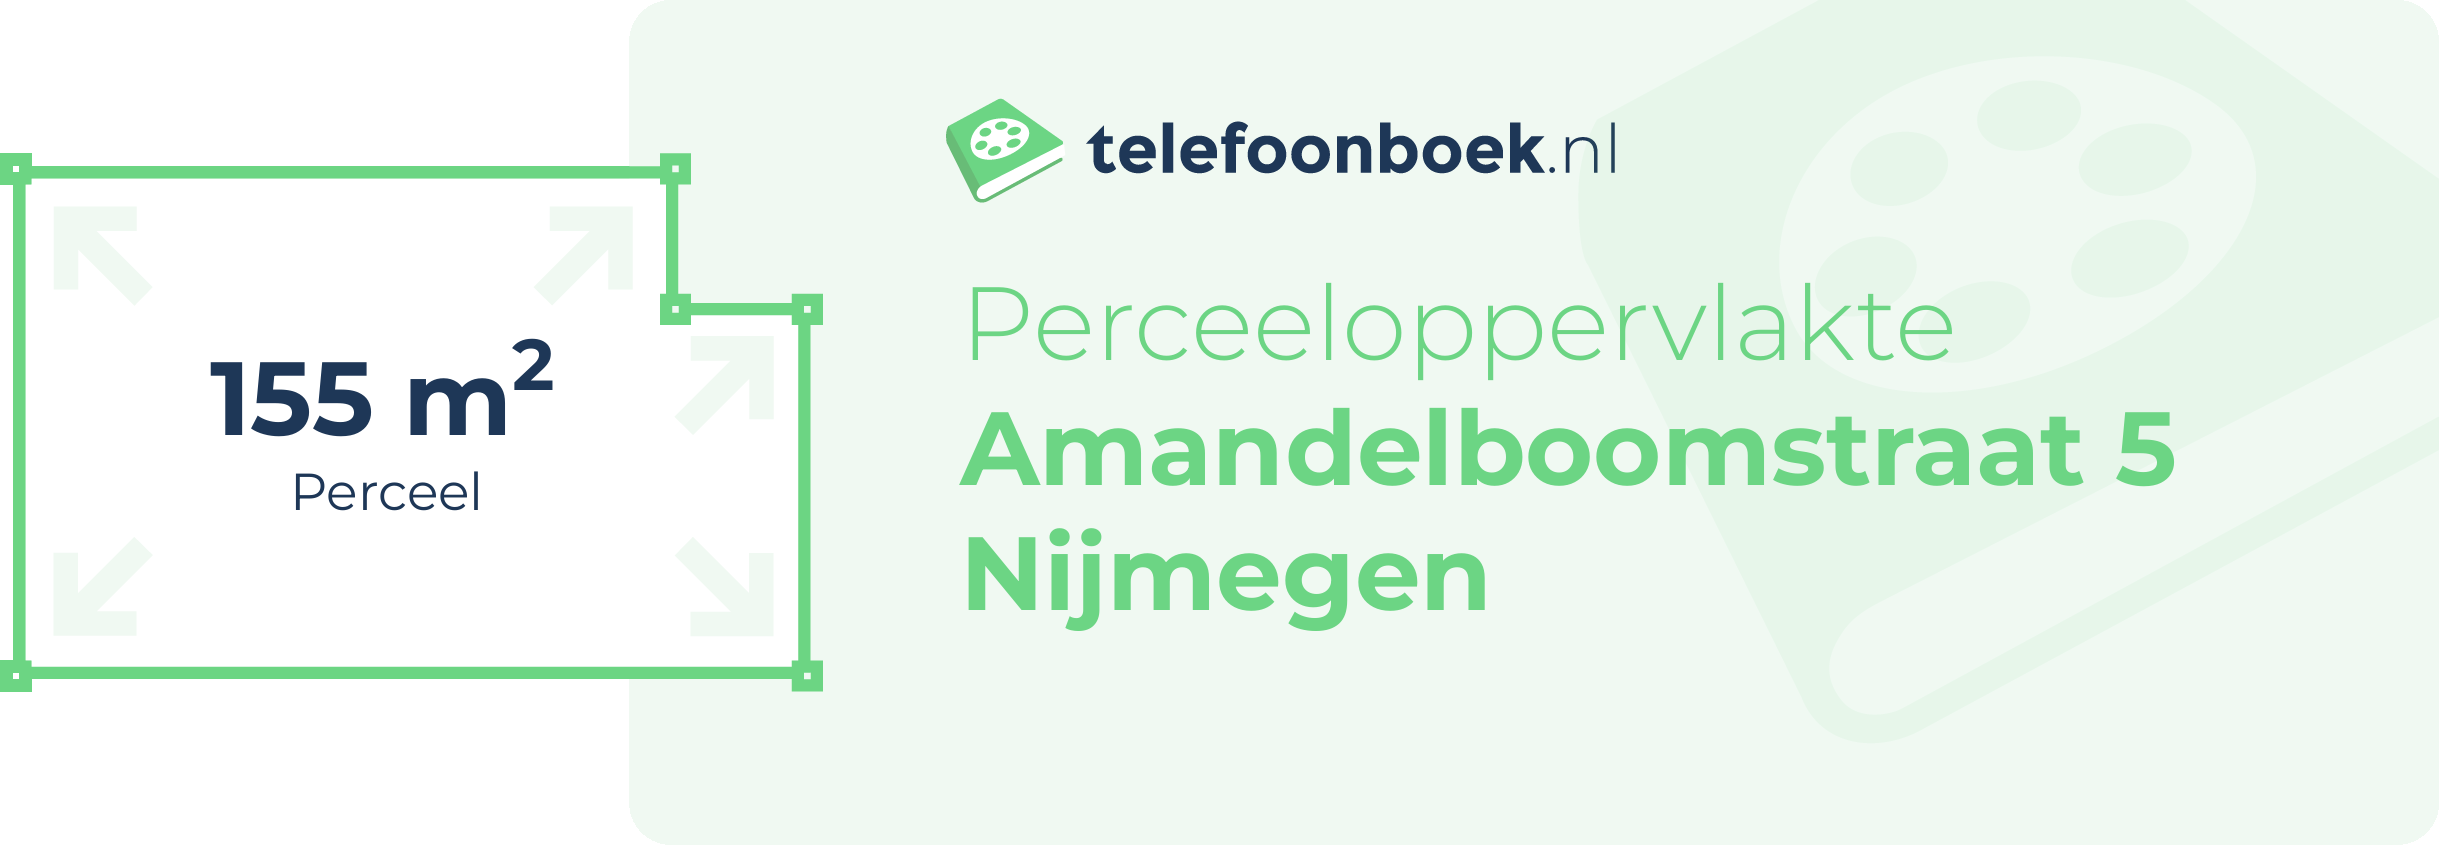 Perceeloppervlakte Amandelboomstraat 5 Nijmegen